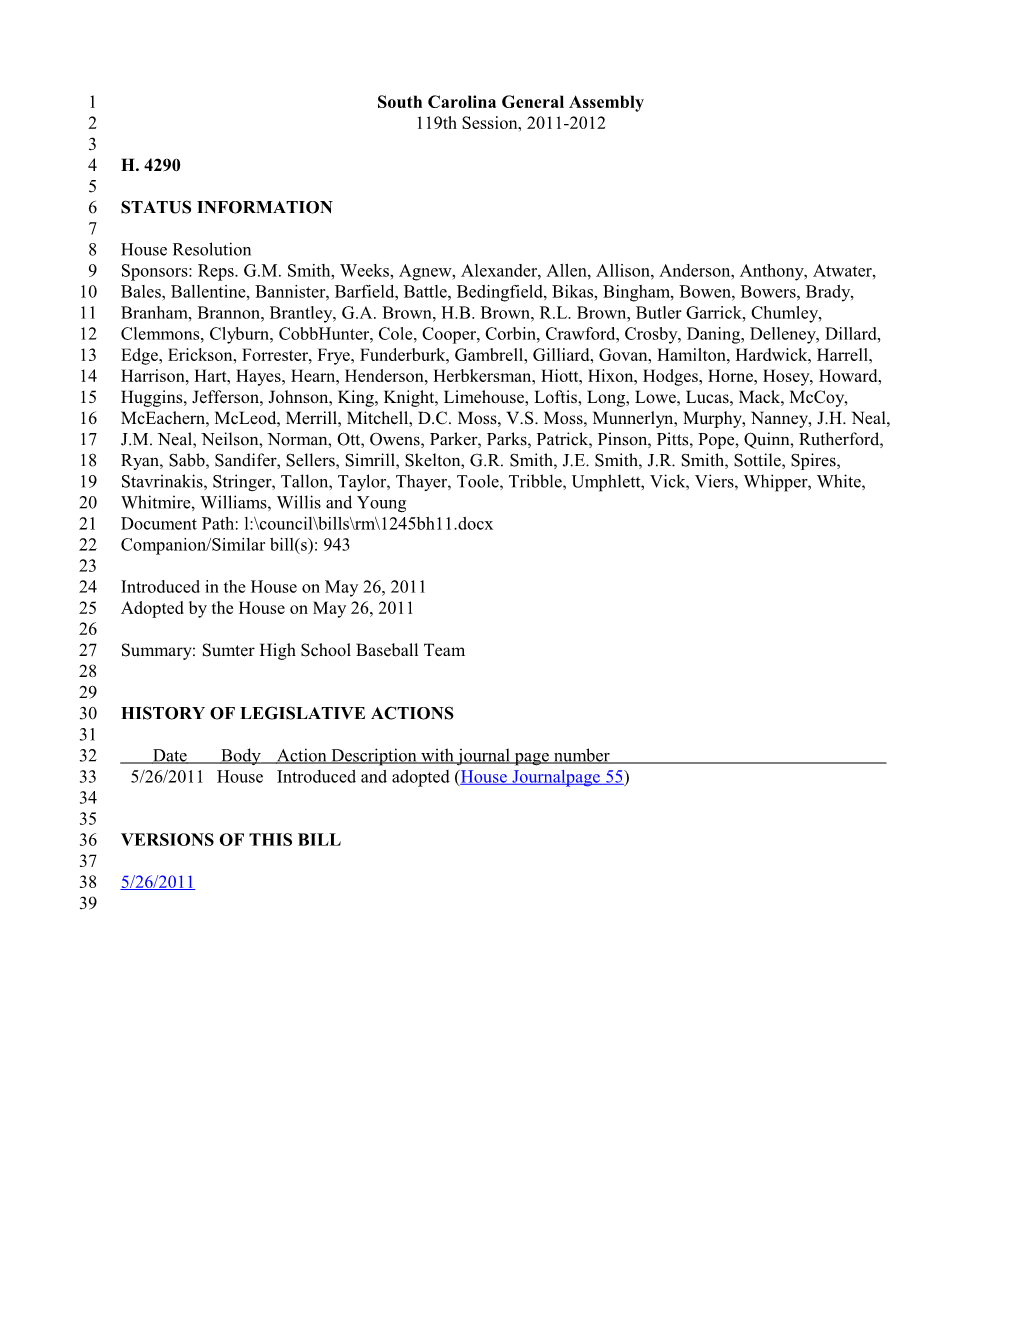 2011-2012 Bill 4290: Sumter High School Baseball Team - South Carolina Legislature Online